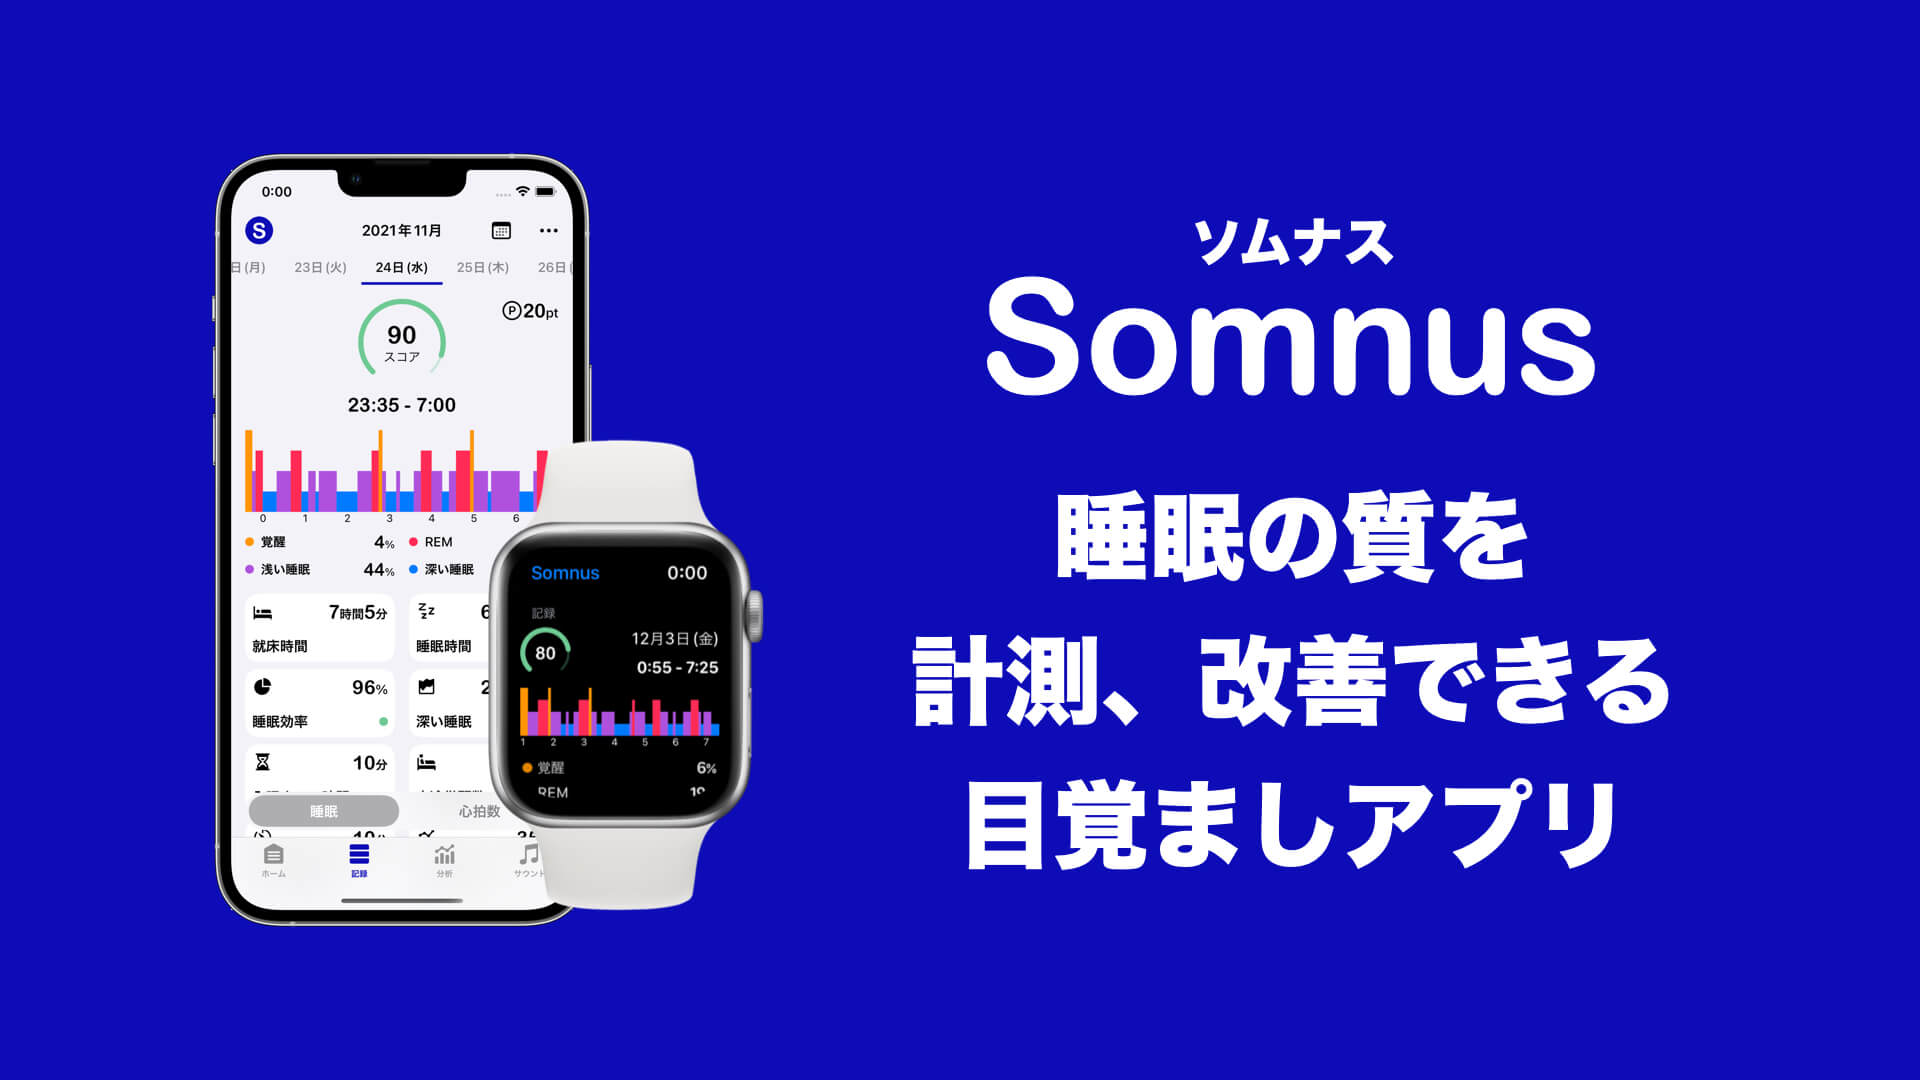 光目覚まし時計 inti | 睡眠アプリ Somnus/ソムナス